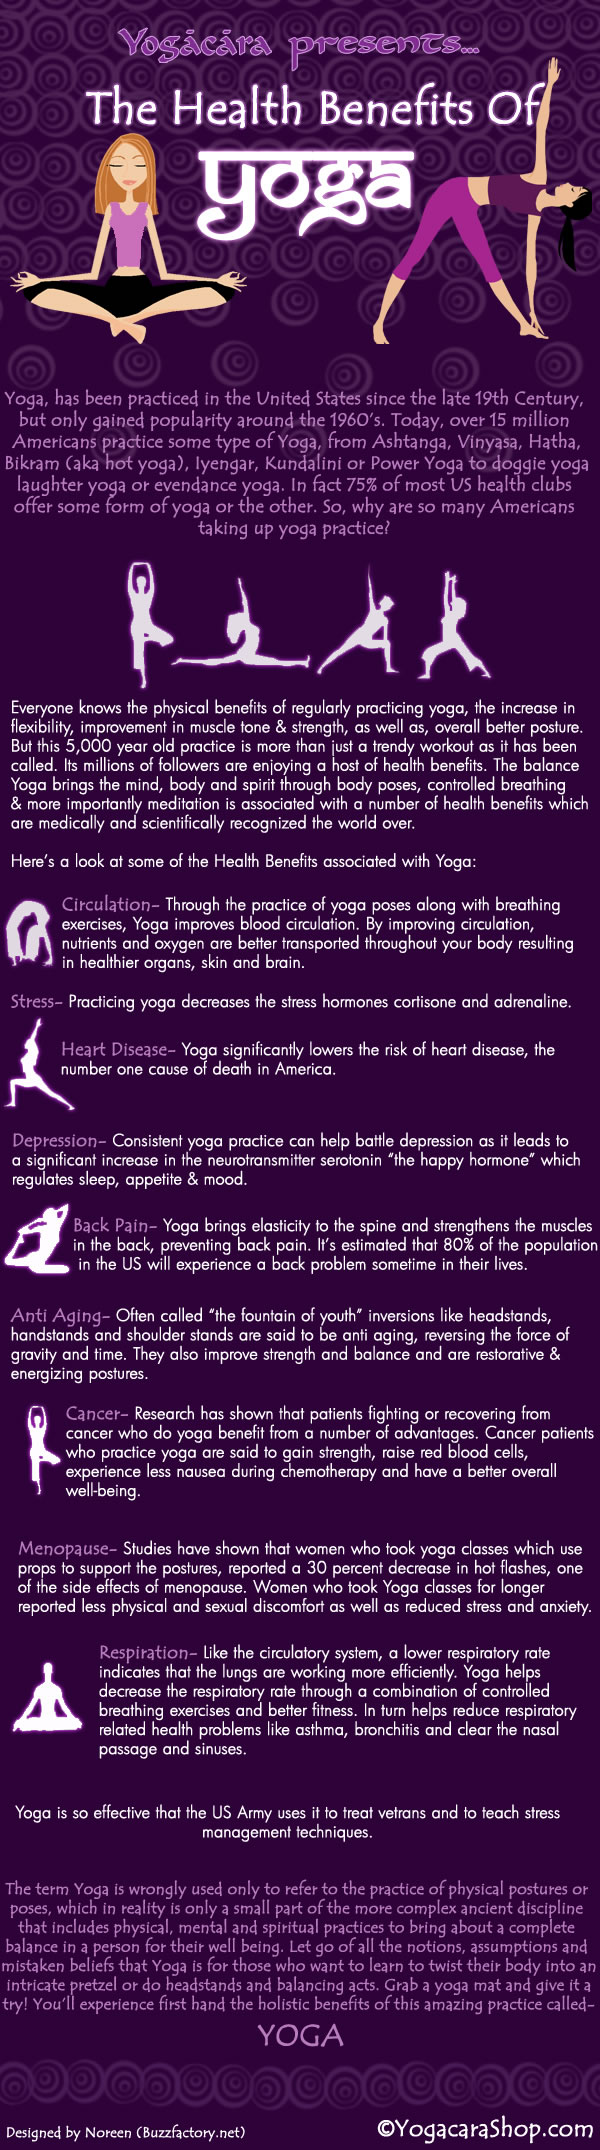 9 Amazing Benefits Of Yoga Infographic